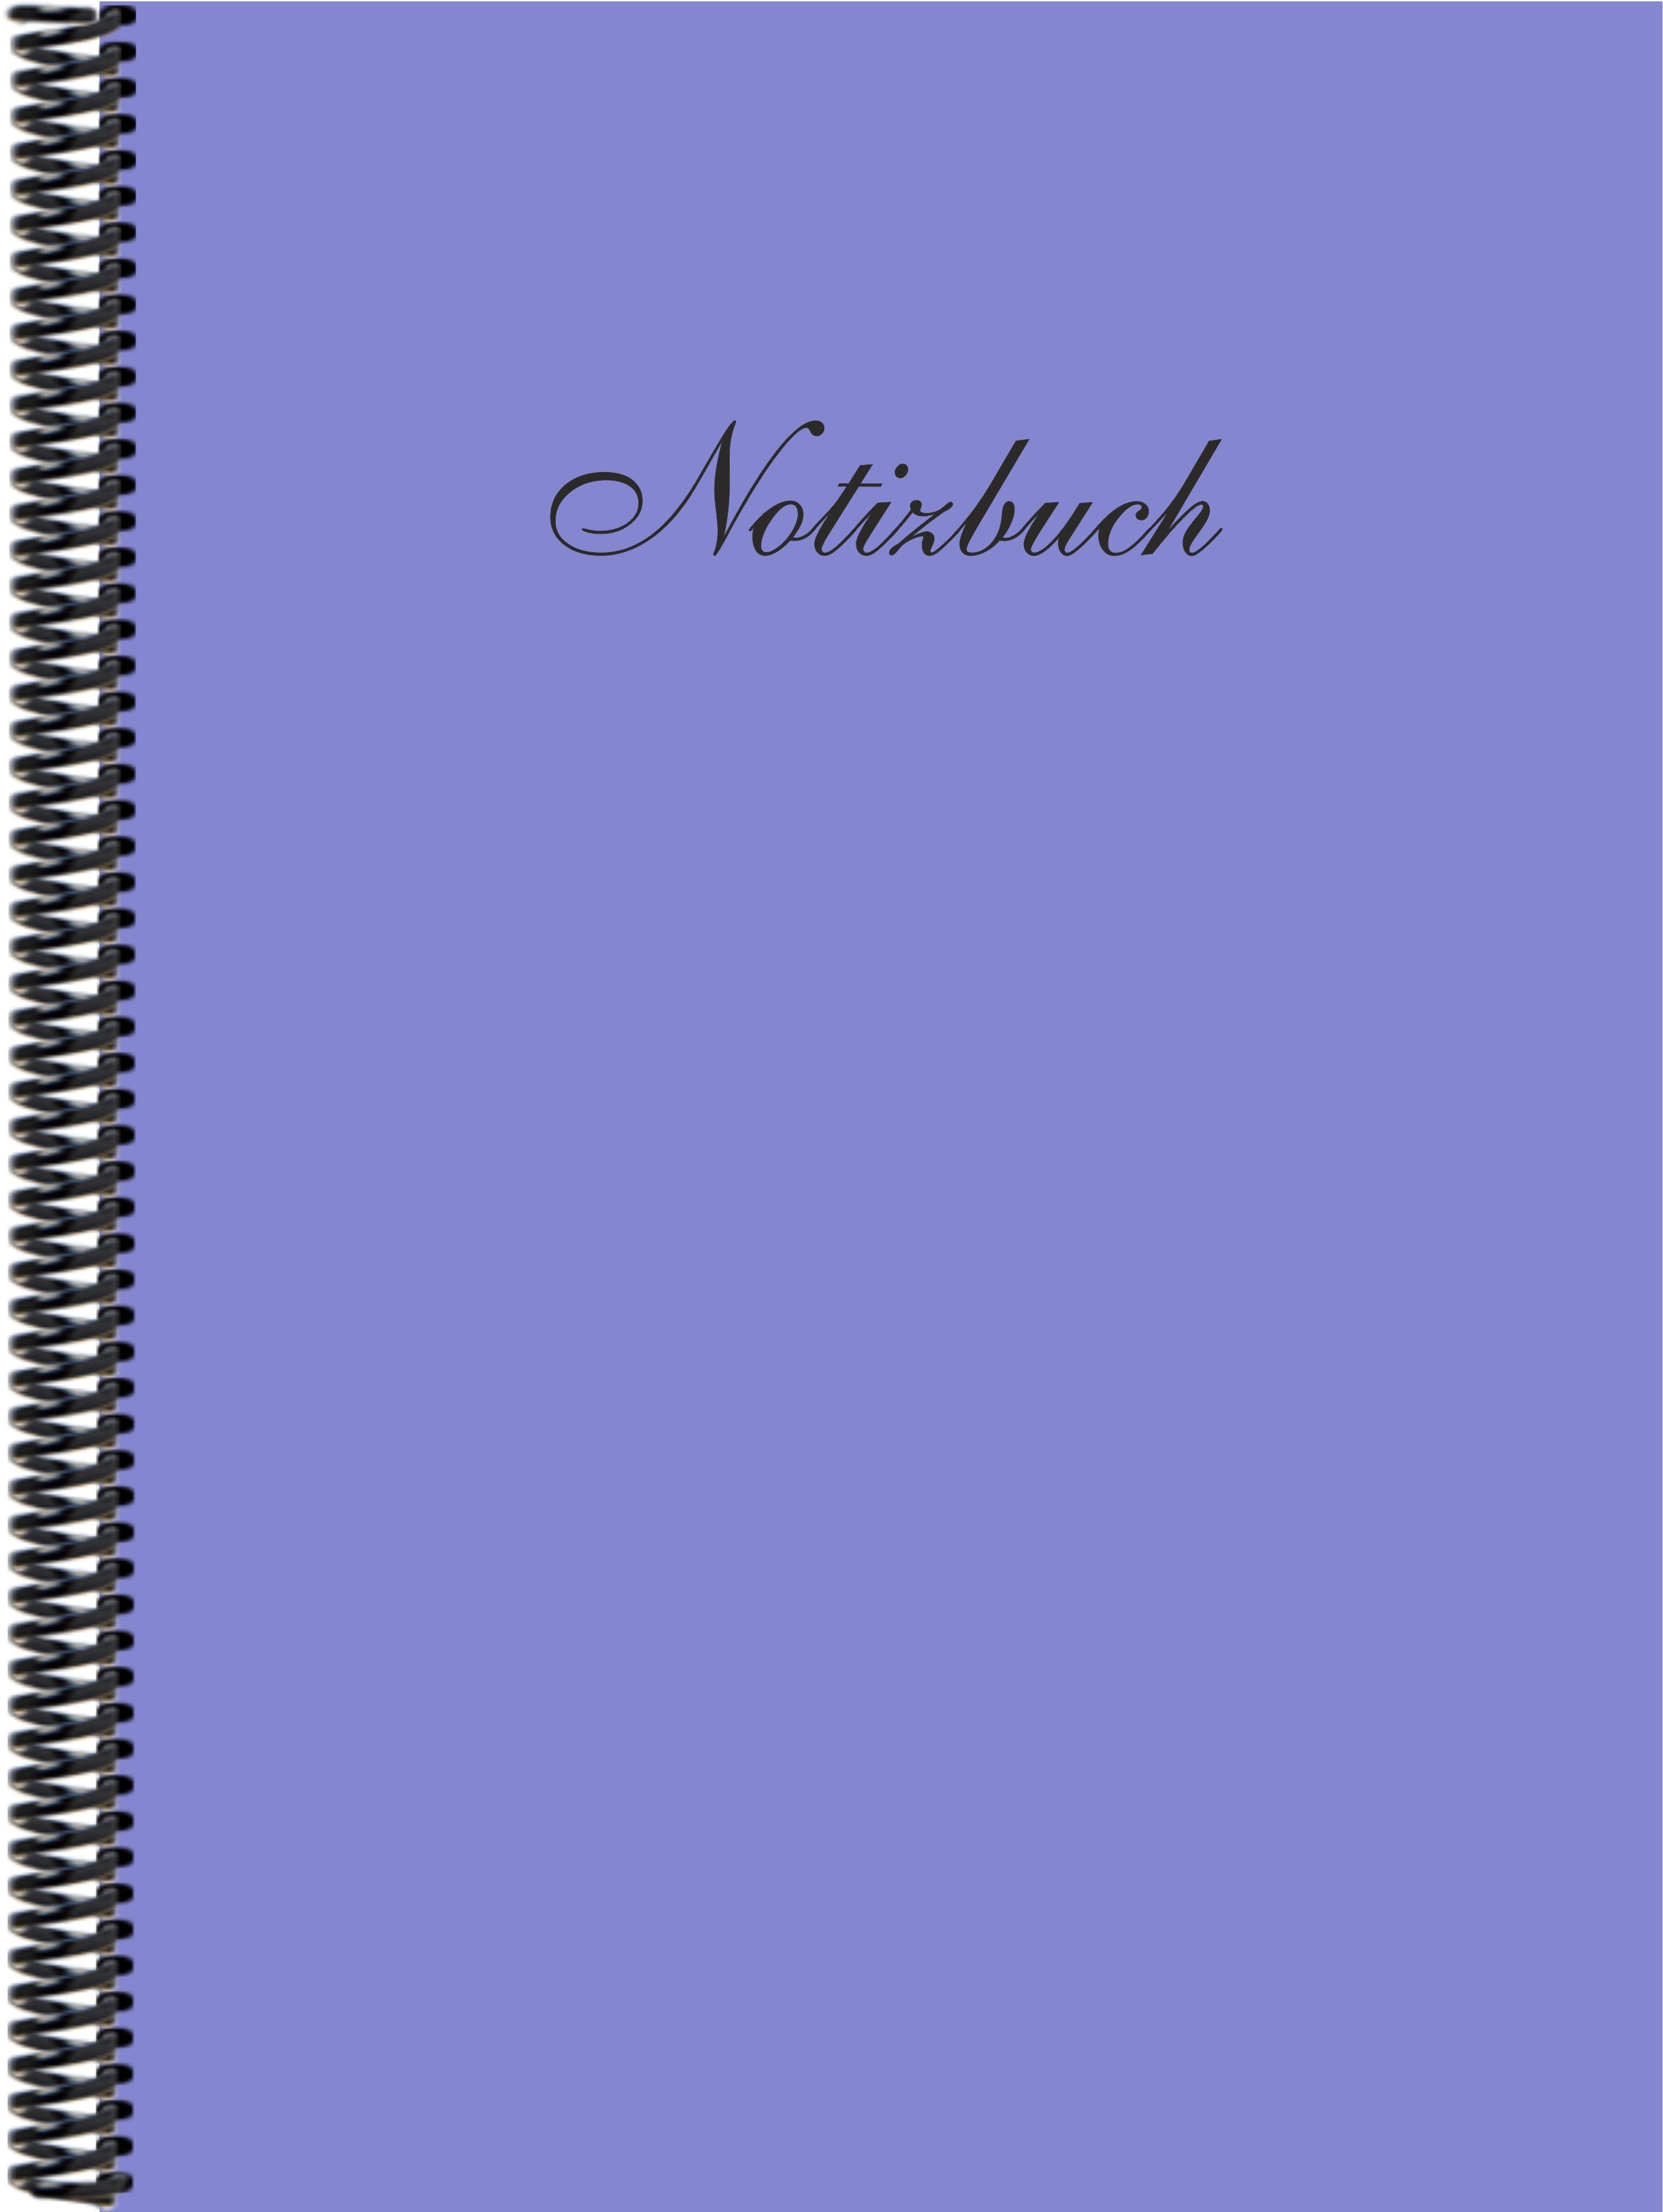 kariert, veilchenblau Notizbuch Gmbh Verlag E&Z in DINA4 der Notizbuch Trendfarbe